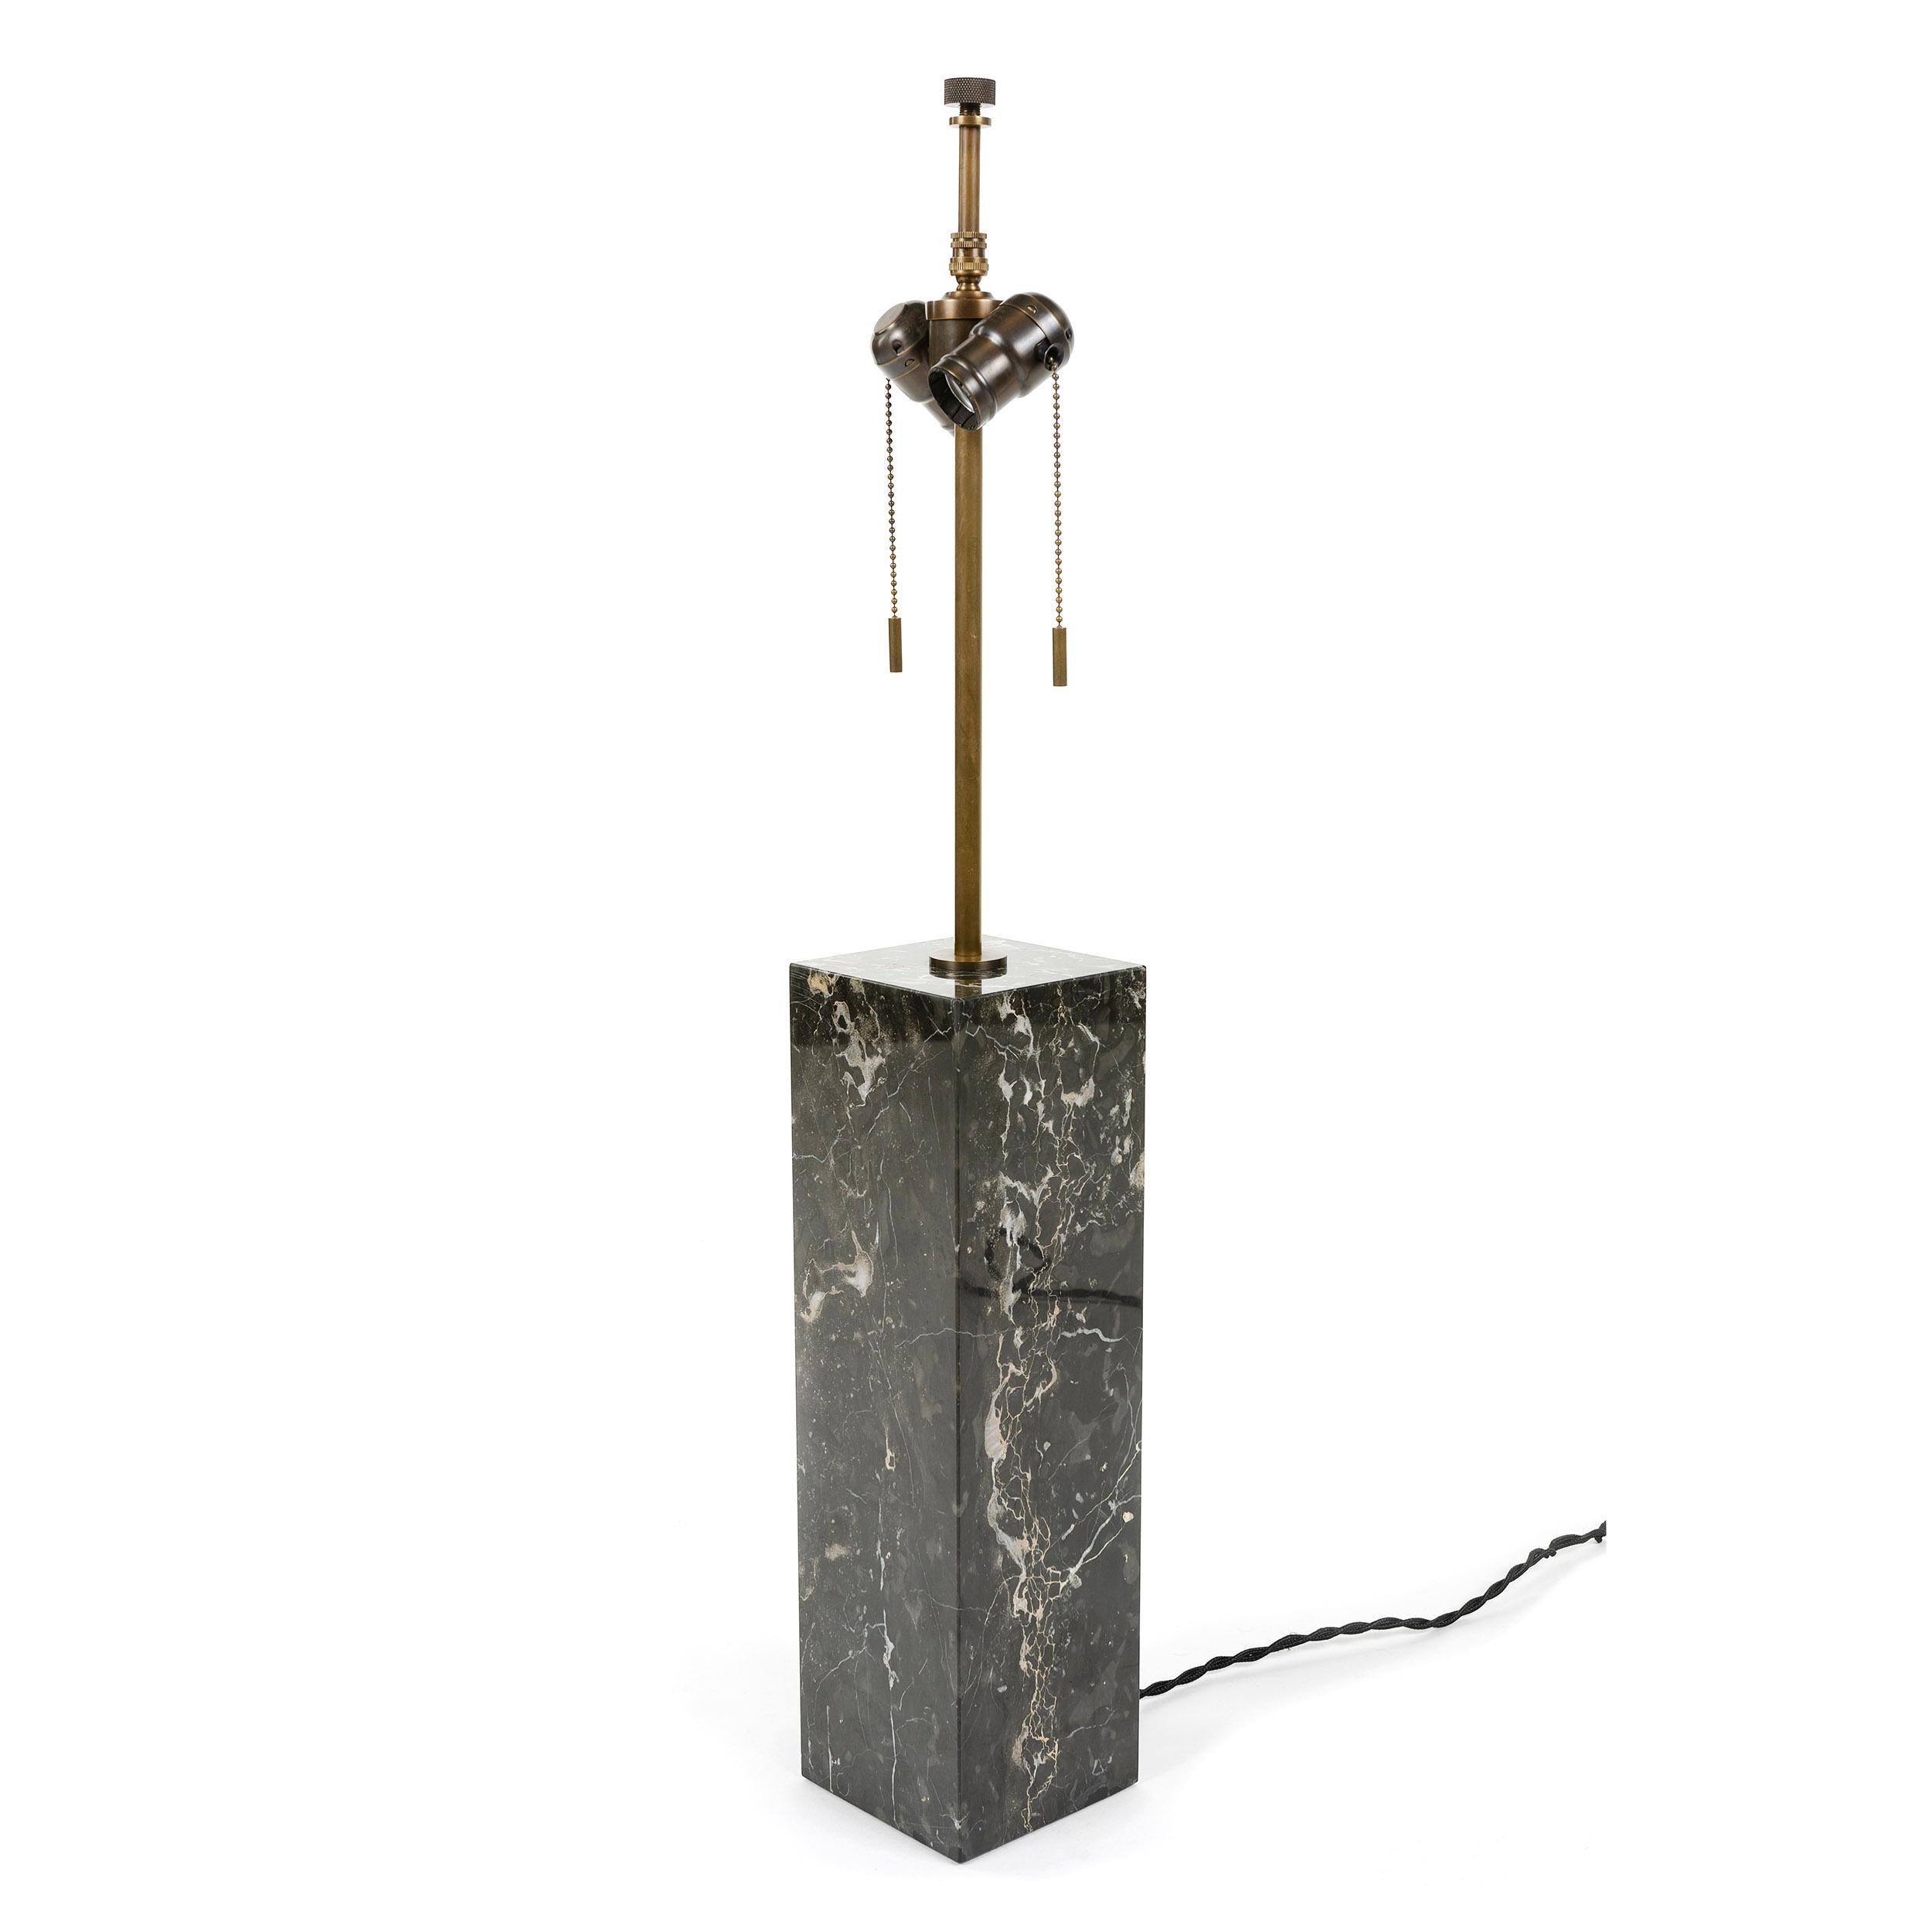 Lampe de table rectangulaire en marbre noir avec quincaillerie en laiton patiné. La base en marbre a une hauteur de 16 pouces.